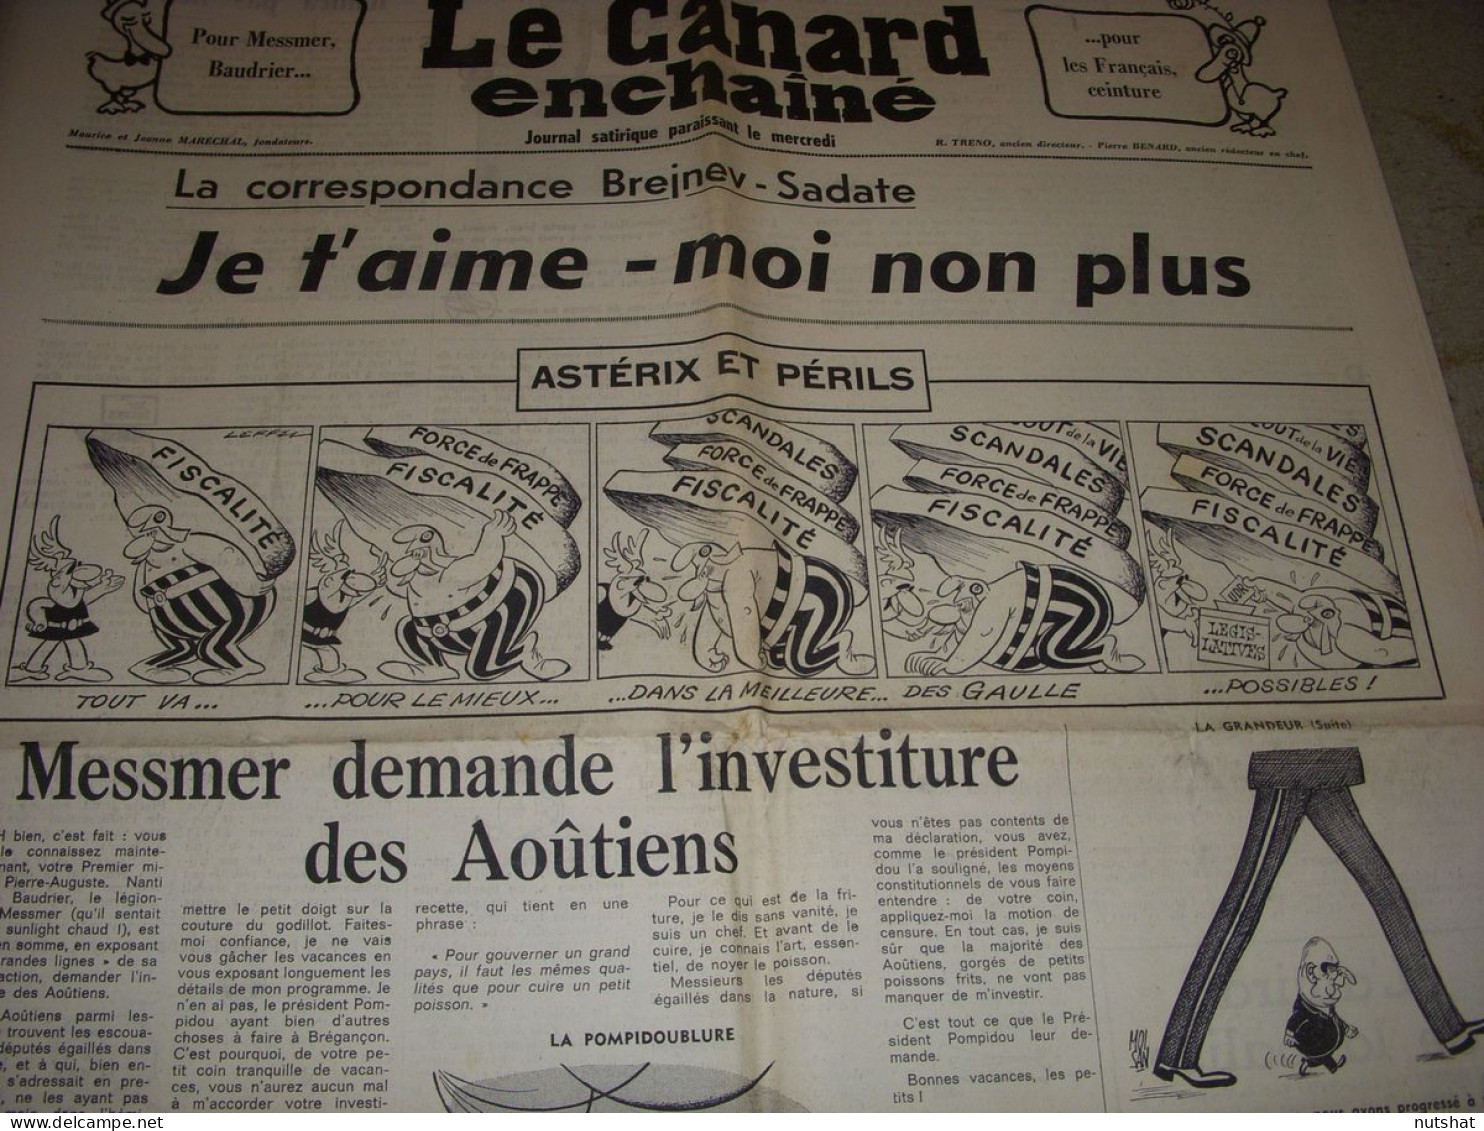 CANARD ENCHAINE 2702 09.08.1972 DW LAURENCE Robert ALTMANN ASTERIX Et PERILS - Politique